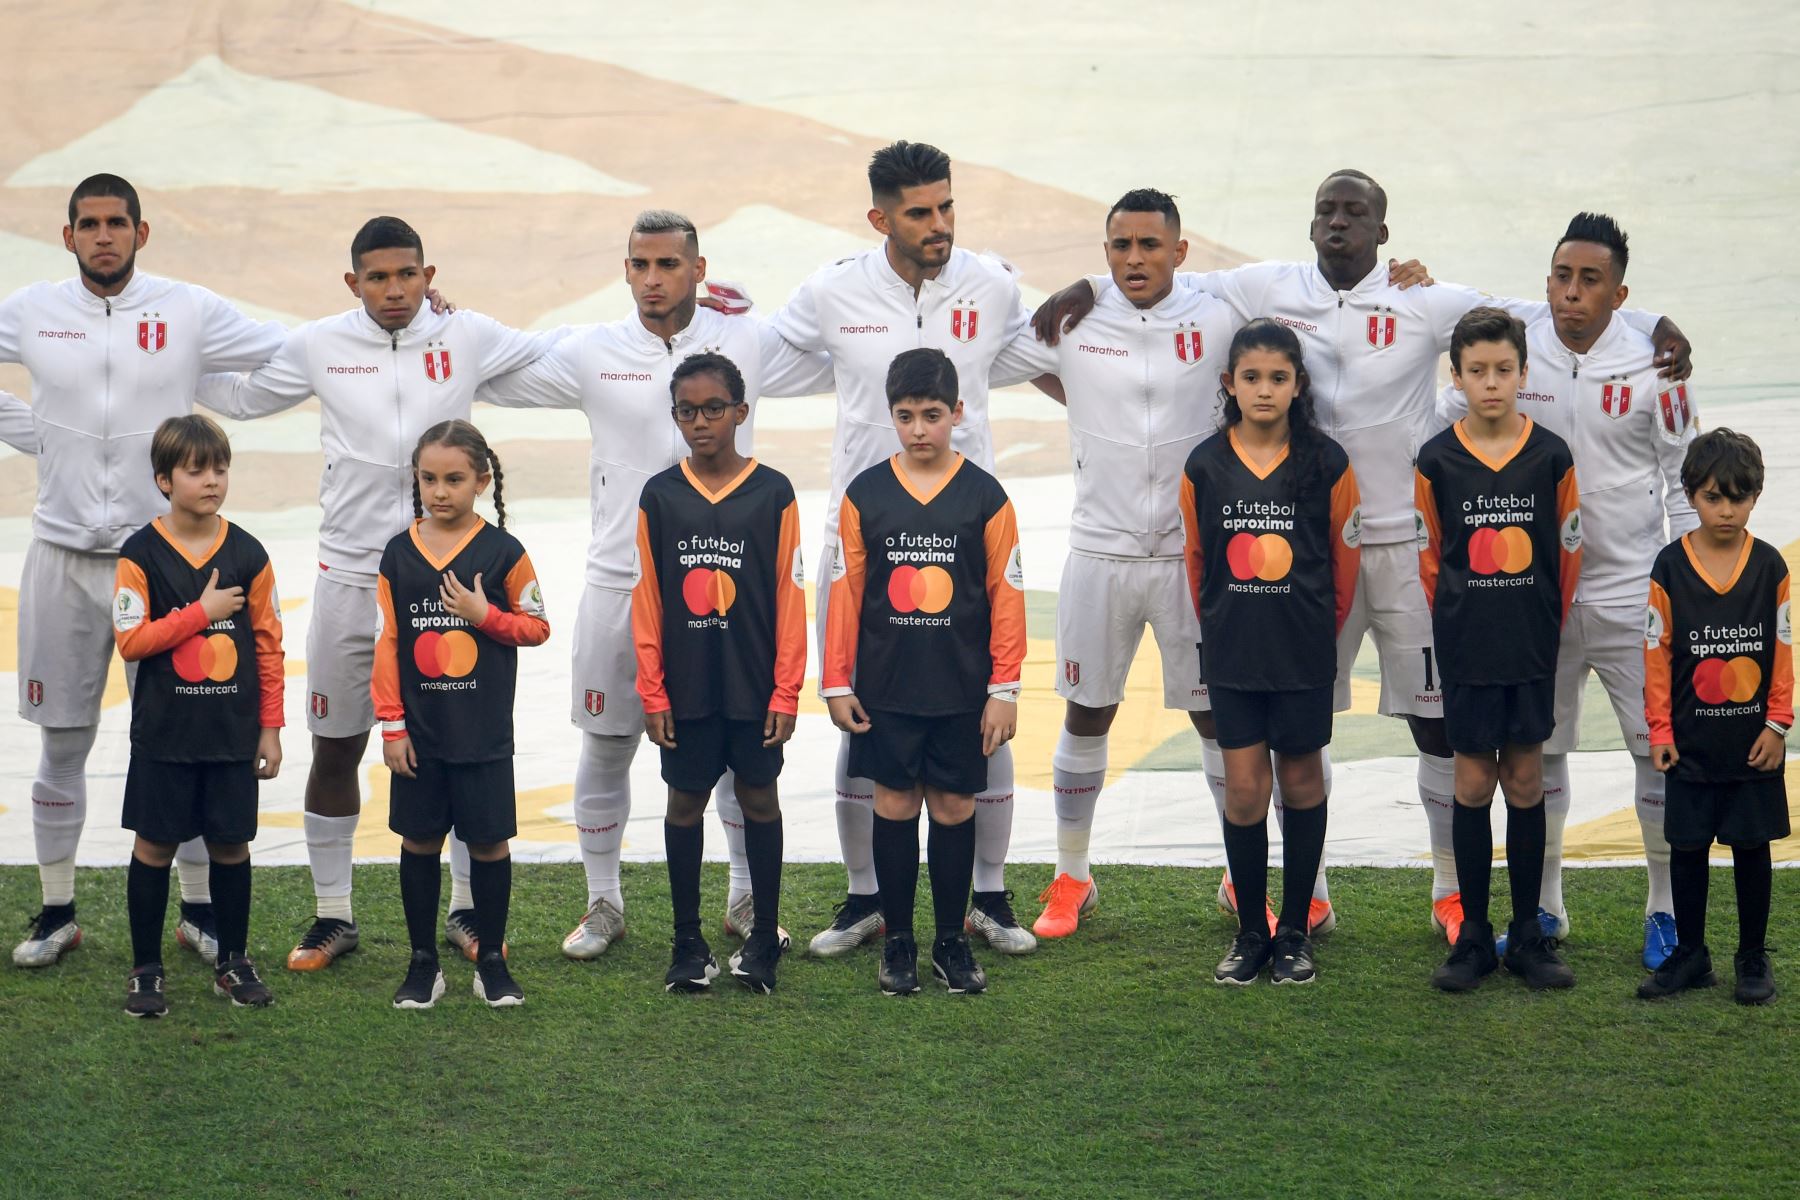 Los jugadores de Perú cantan el himno nacional antes del partido final de la Copa América del torneo de fútbol contra Brasil en el Estadio Maracaná de Río de Janeiro, Brasil.
Foto: AFP